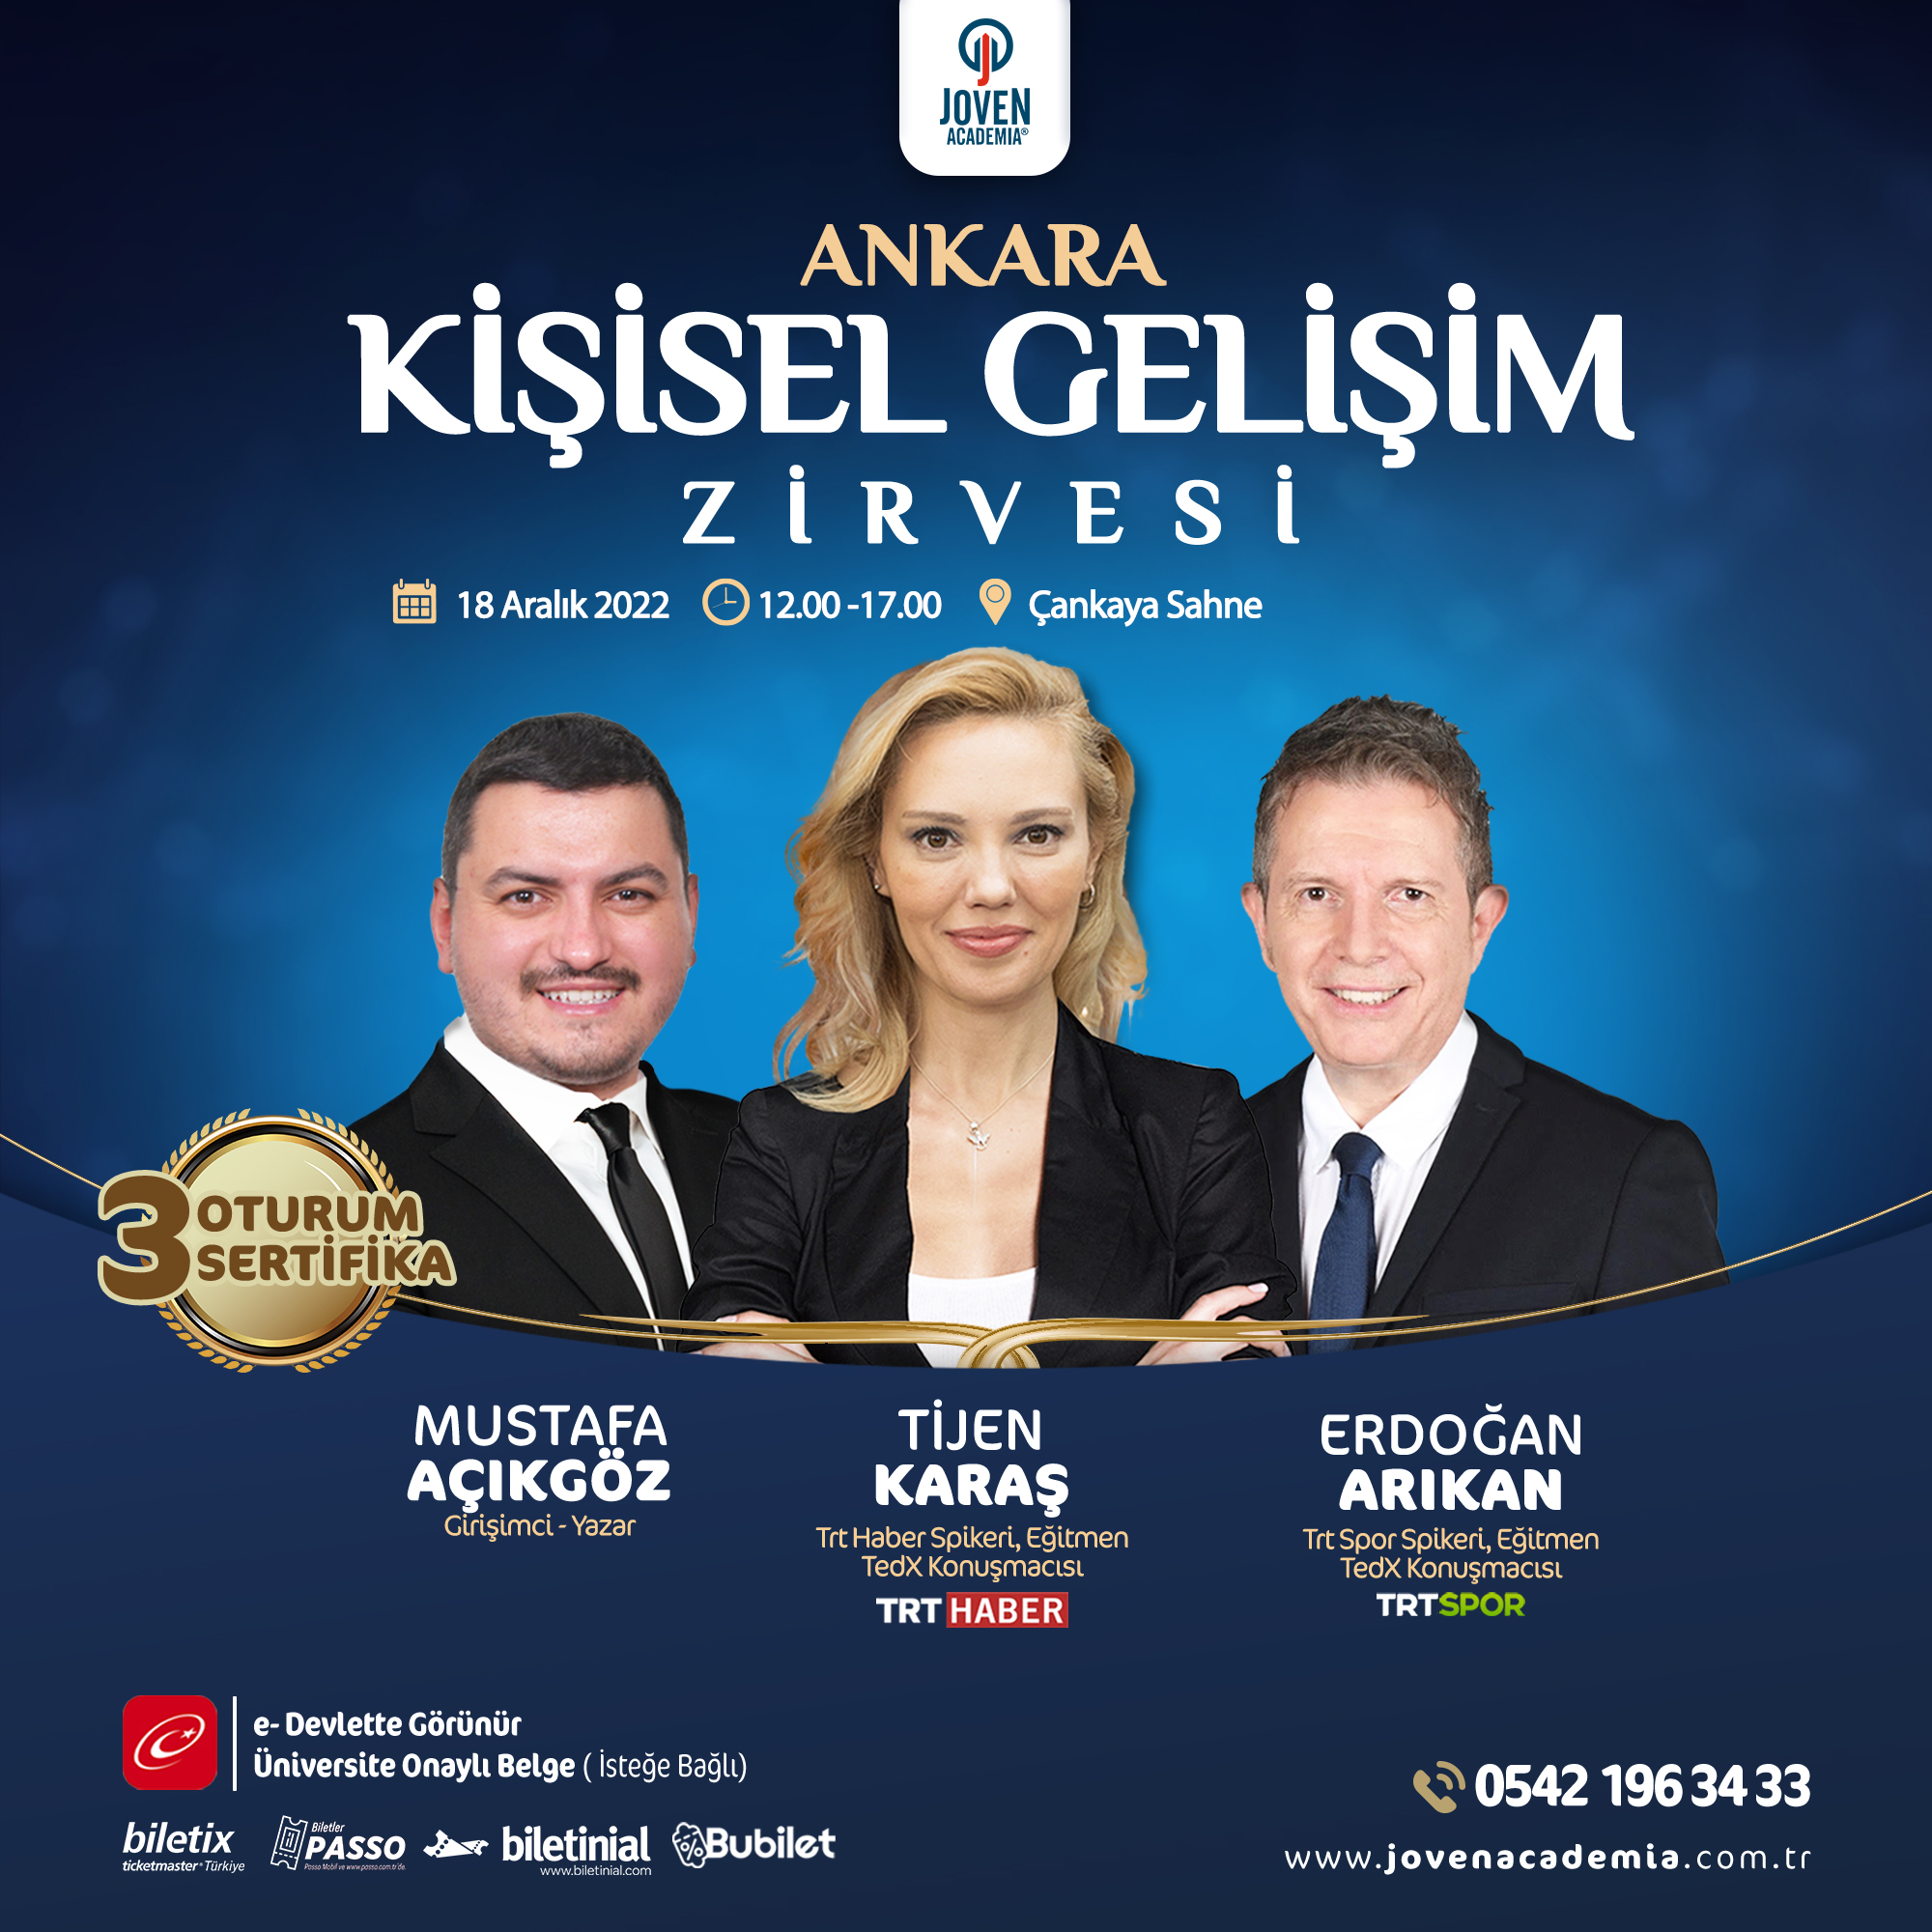 Ankara Kişisel Gelişim Zirvesi (18 Aralık 2022)